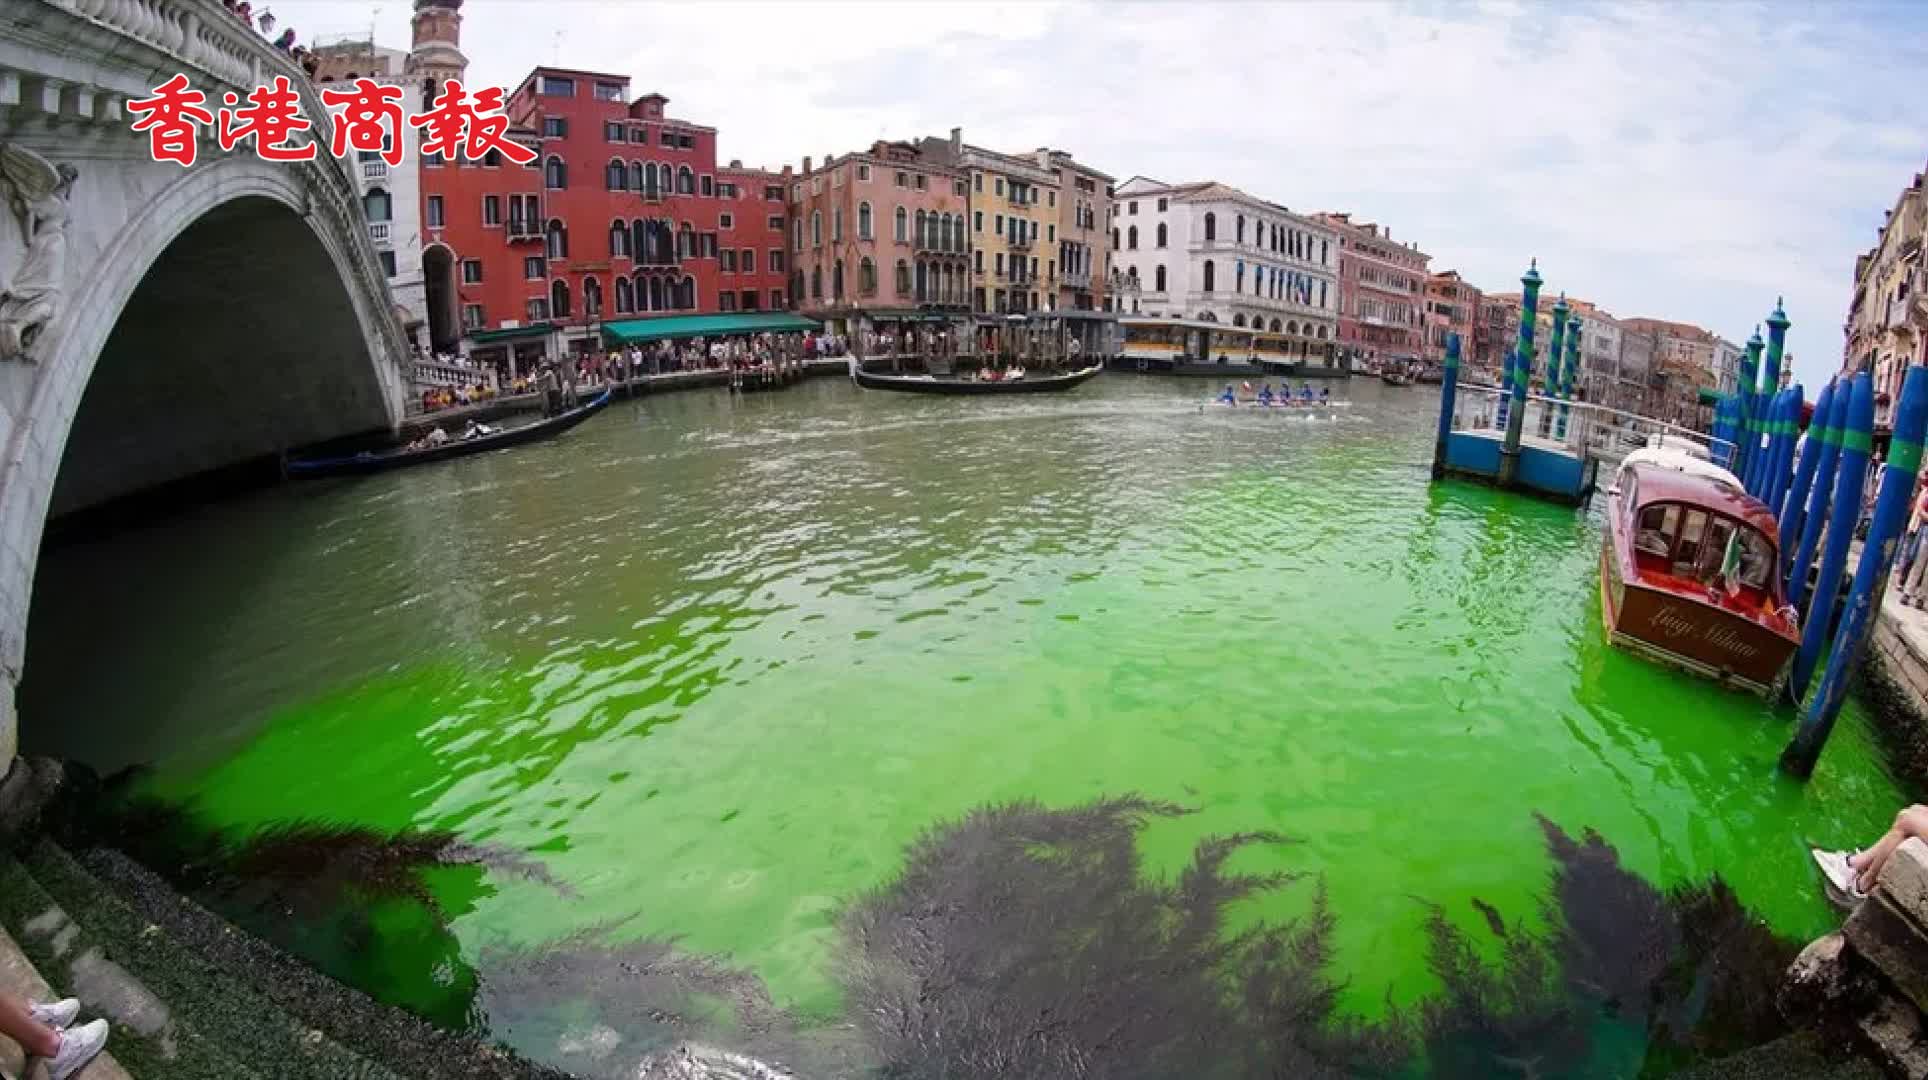 有片｜意大利威尼斯運河部分變綠 疑是環保活動人士所為